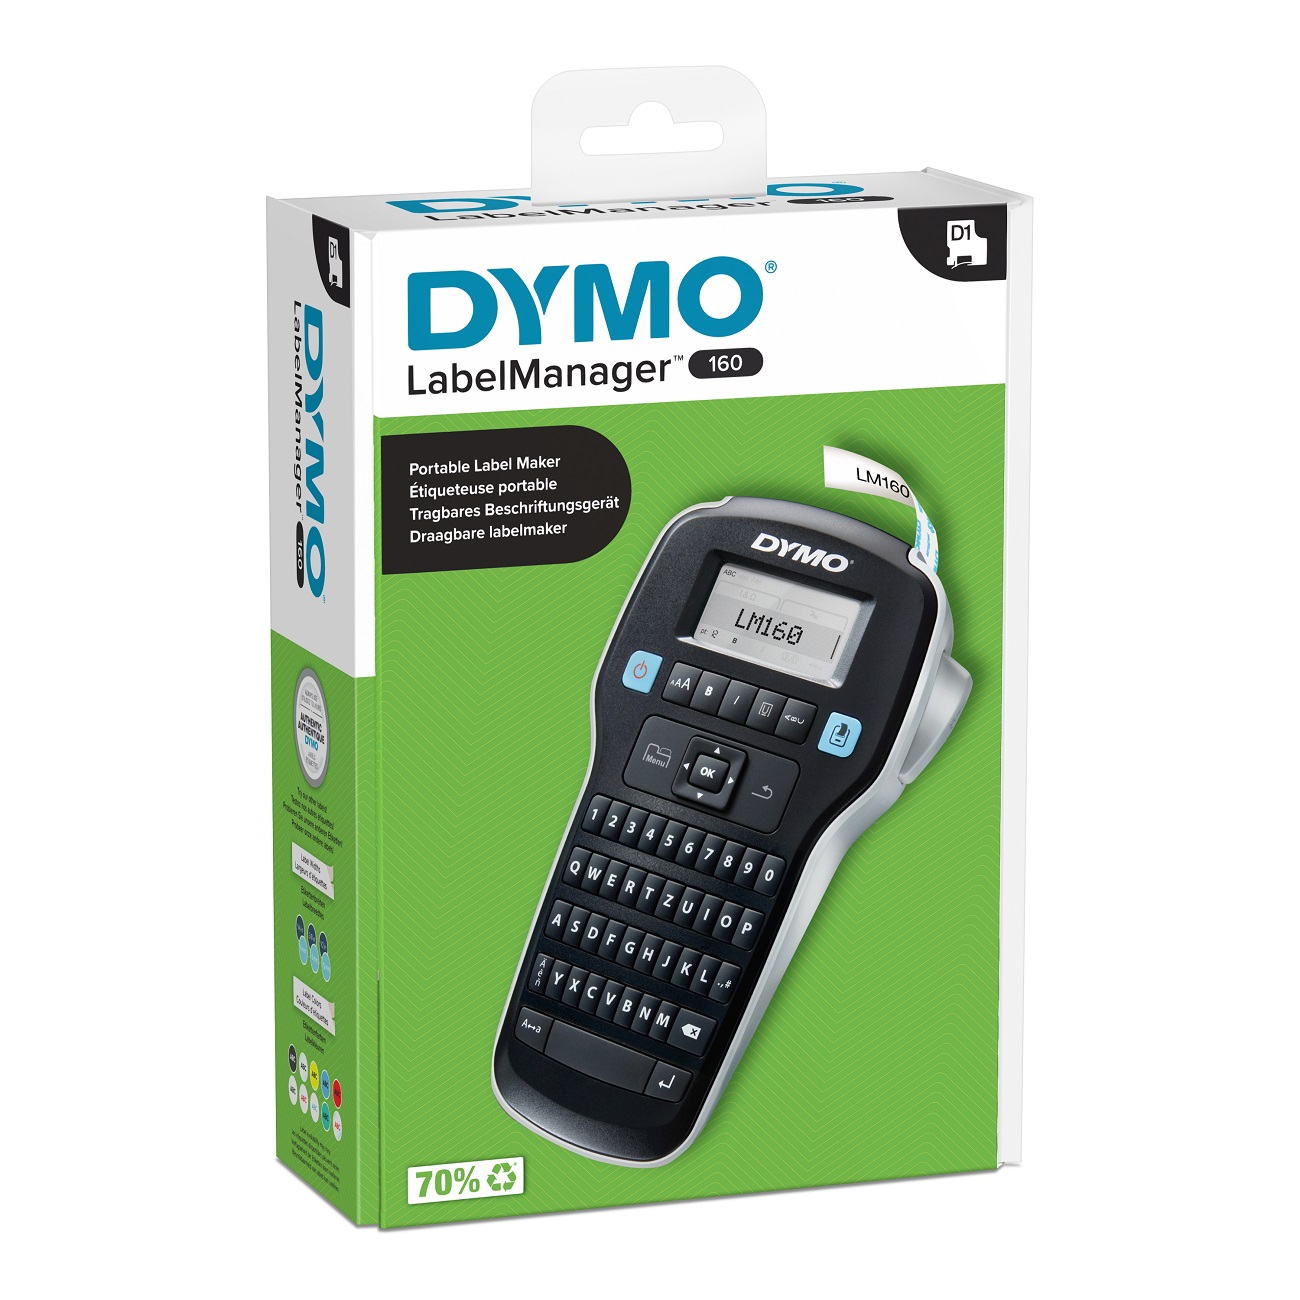 Dymo 2174611, Etikettendrucker, DYMO LabelManager 160 mm 2174611 (BILD1)